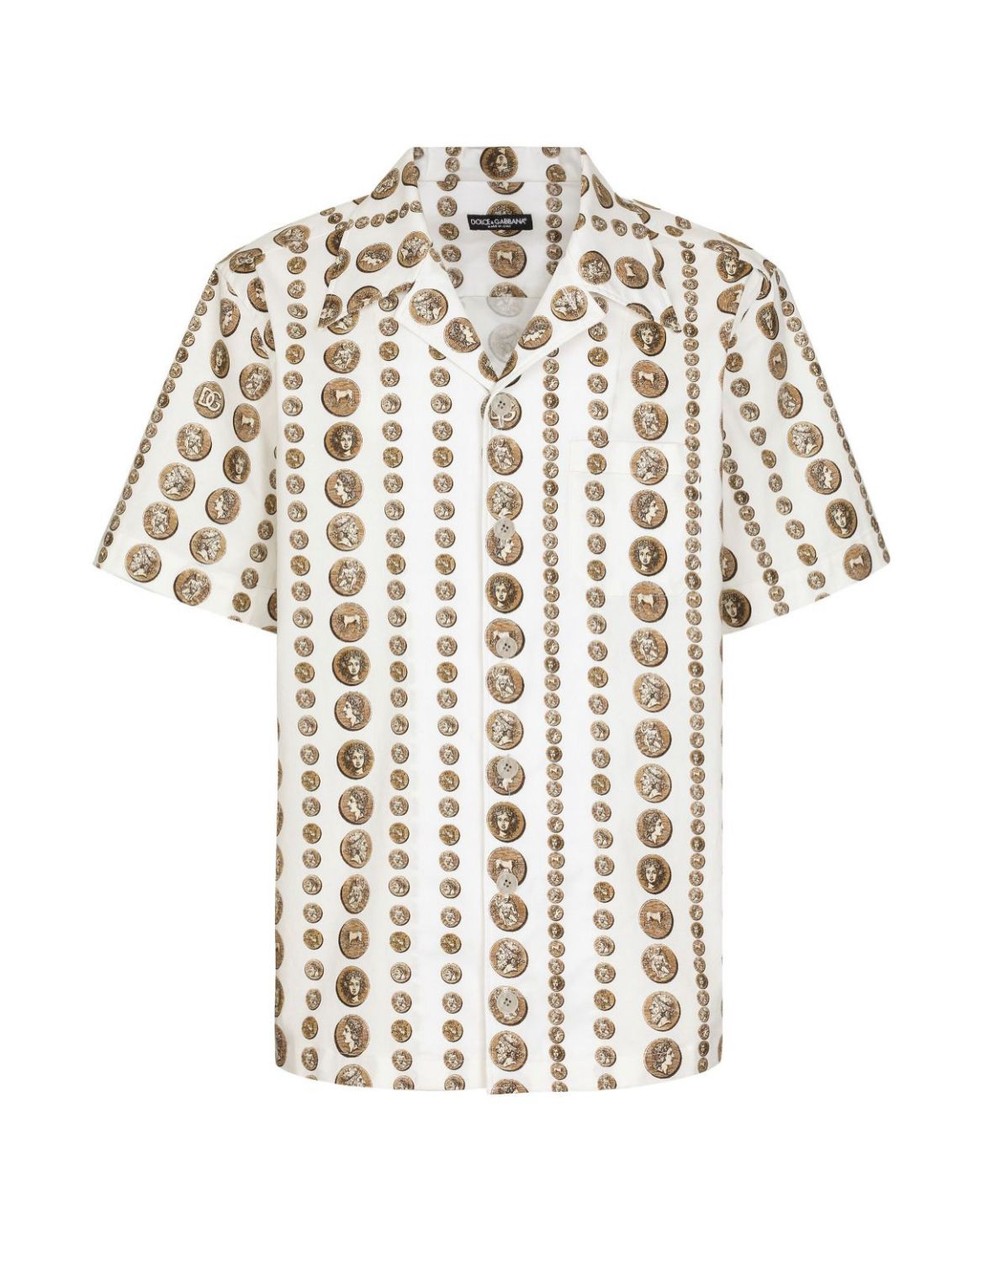 Camisa com estampa Monete, da Dolce&Gabbana  — Foto: Divulgação